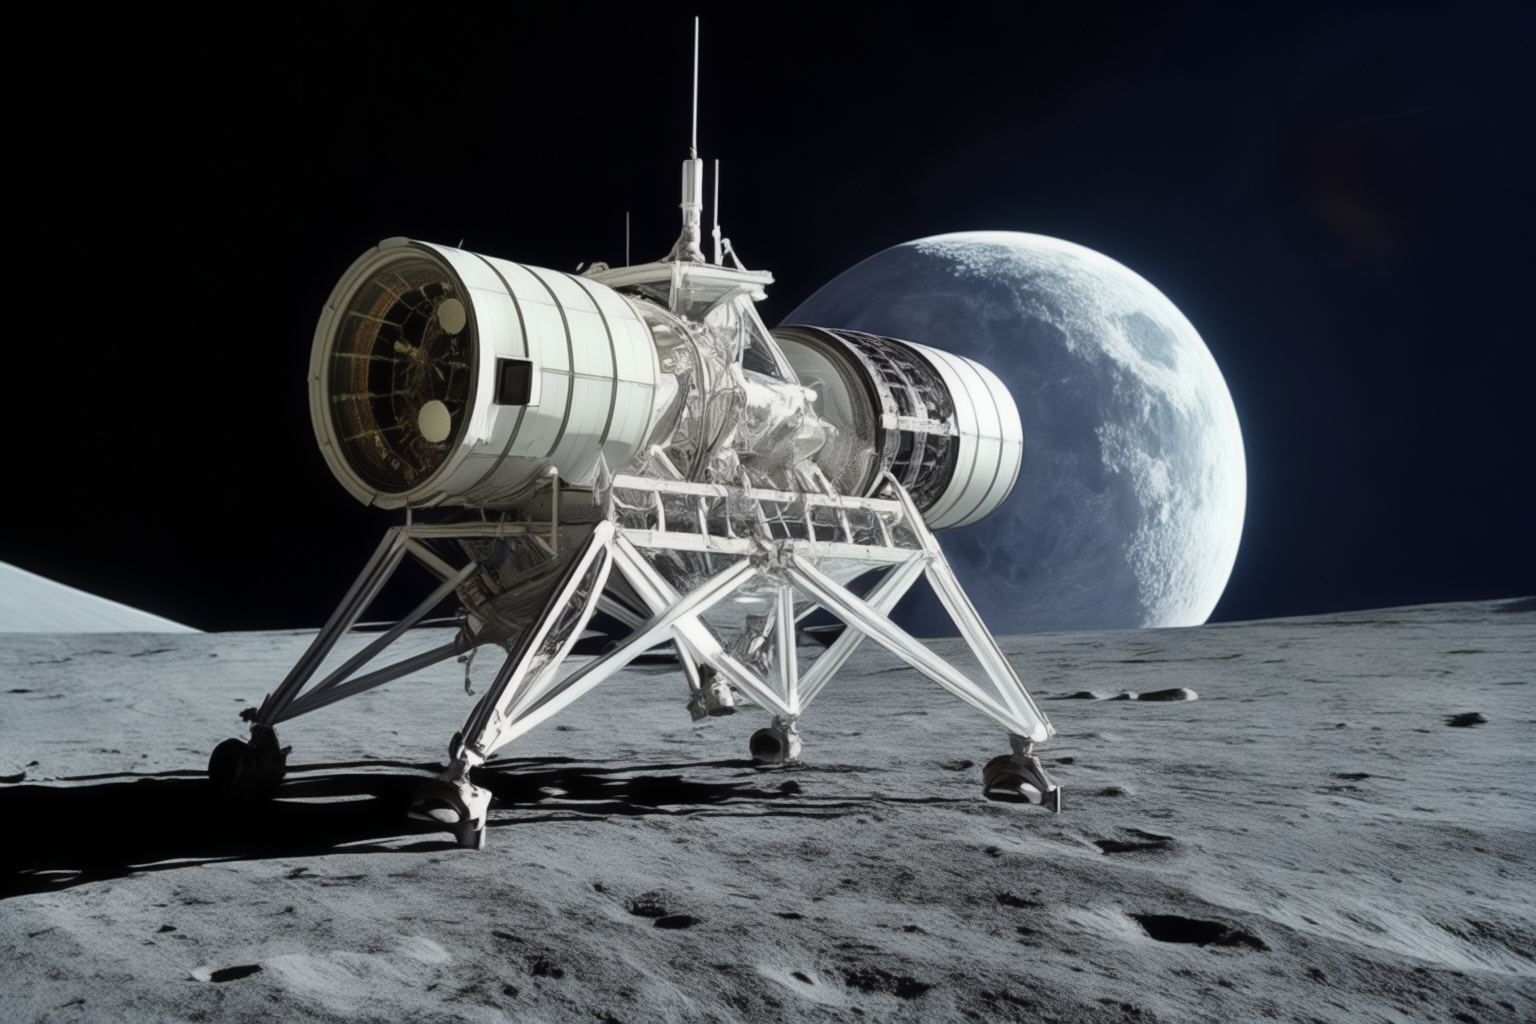 Лунную миссию NASA задержали: агентство расследует проблему теплозащиты